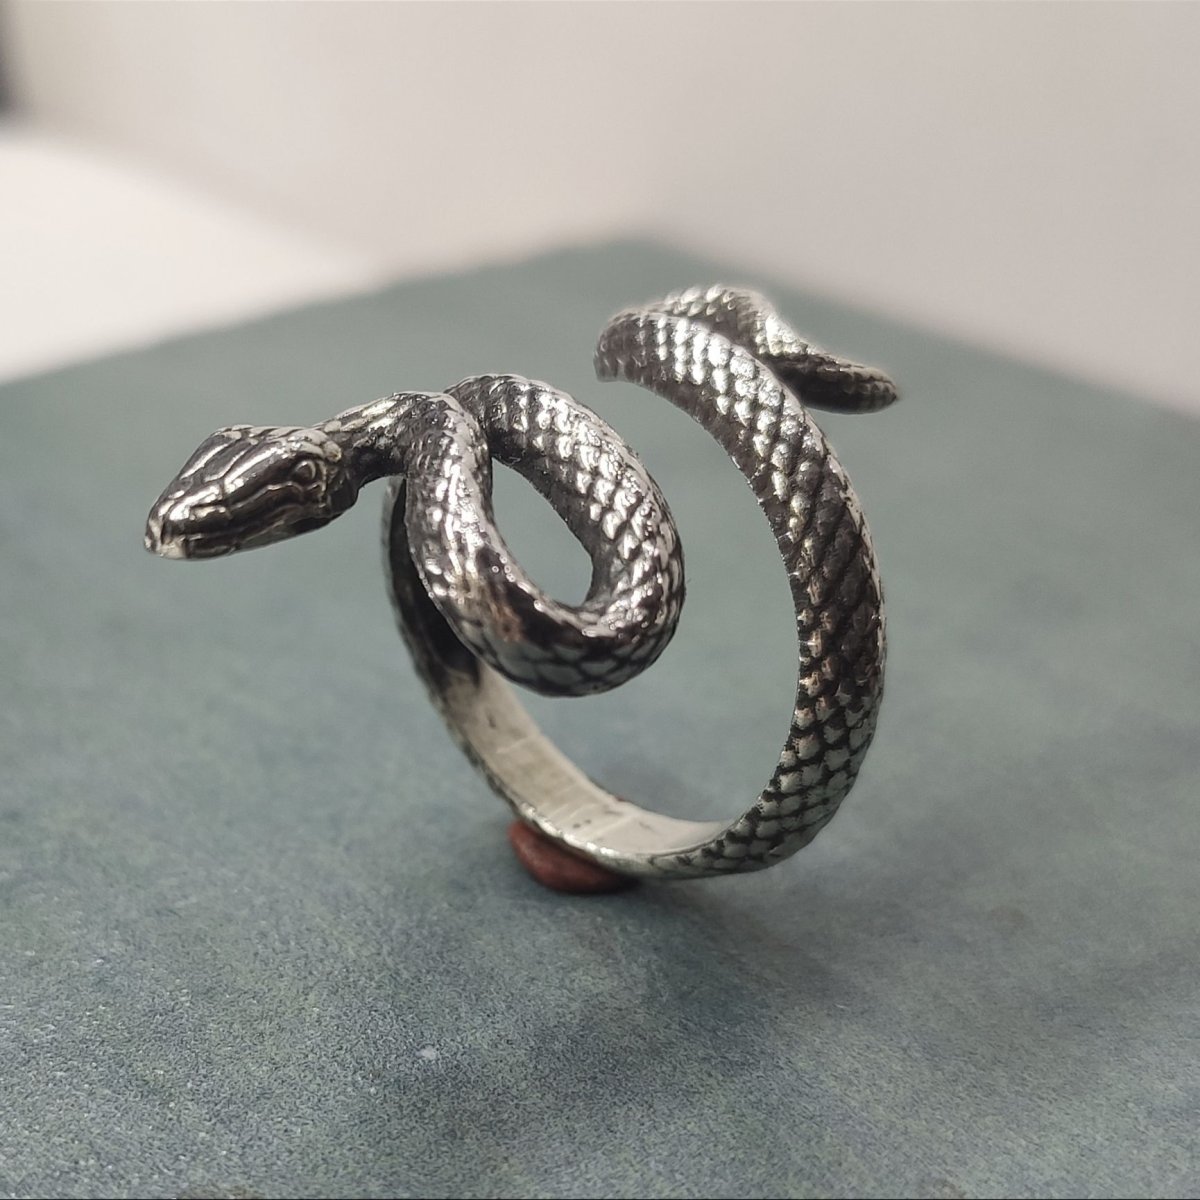 Кольцо змея